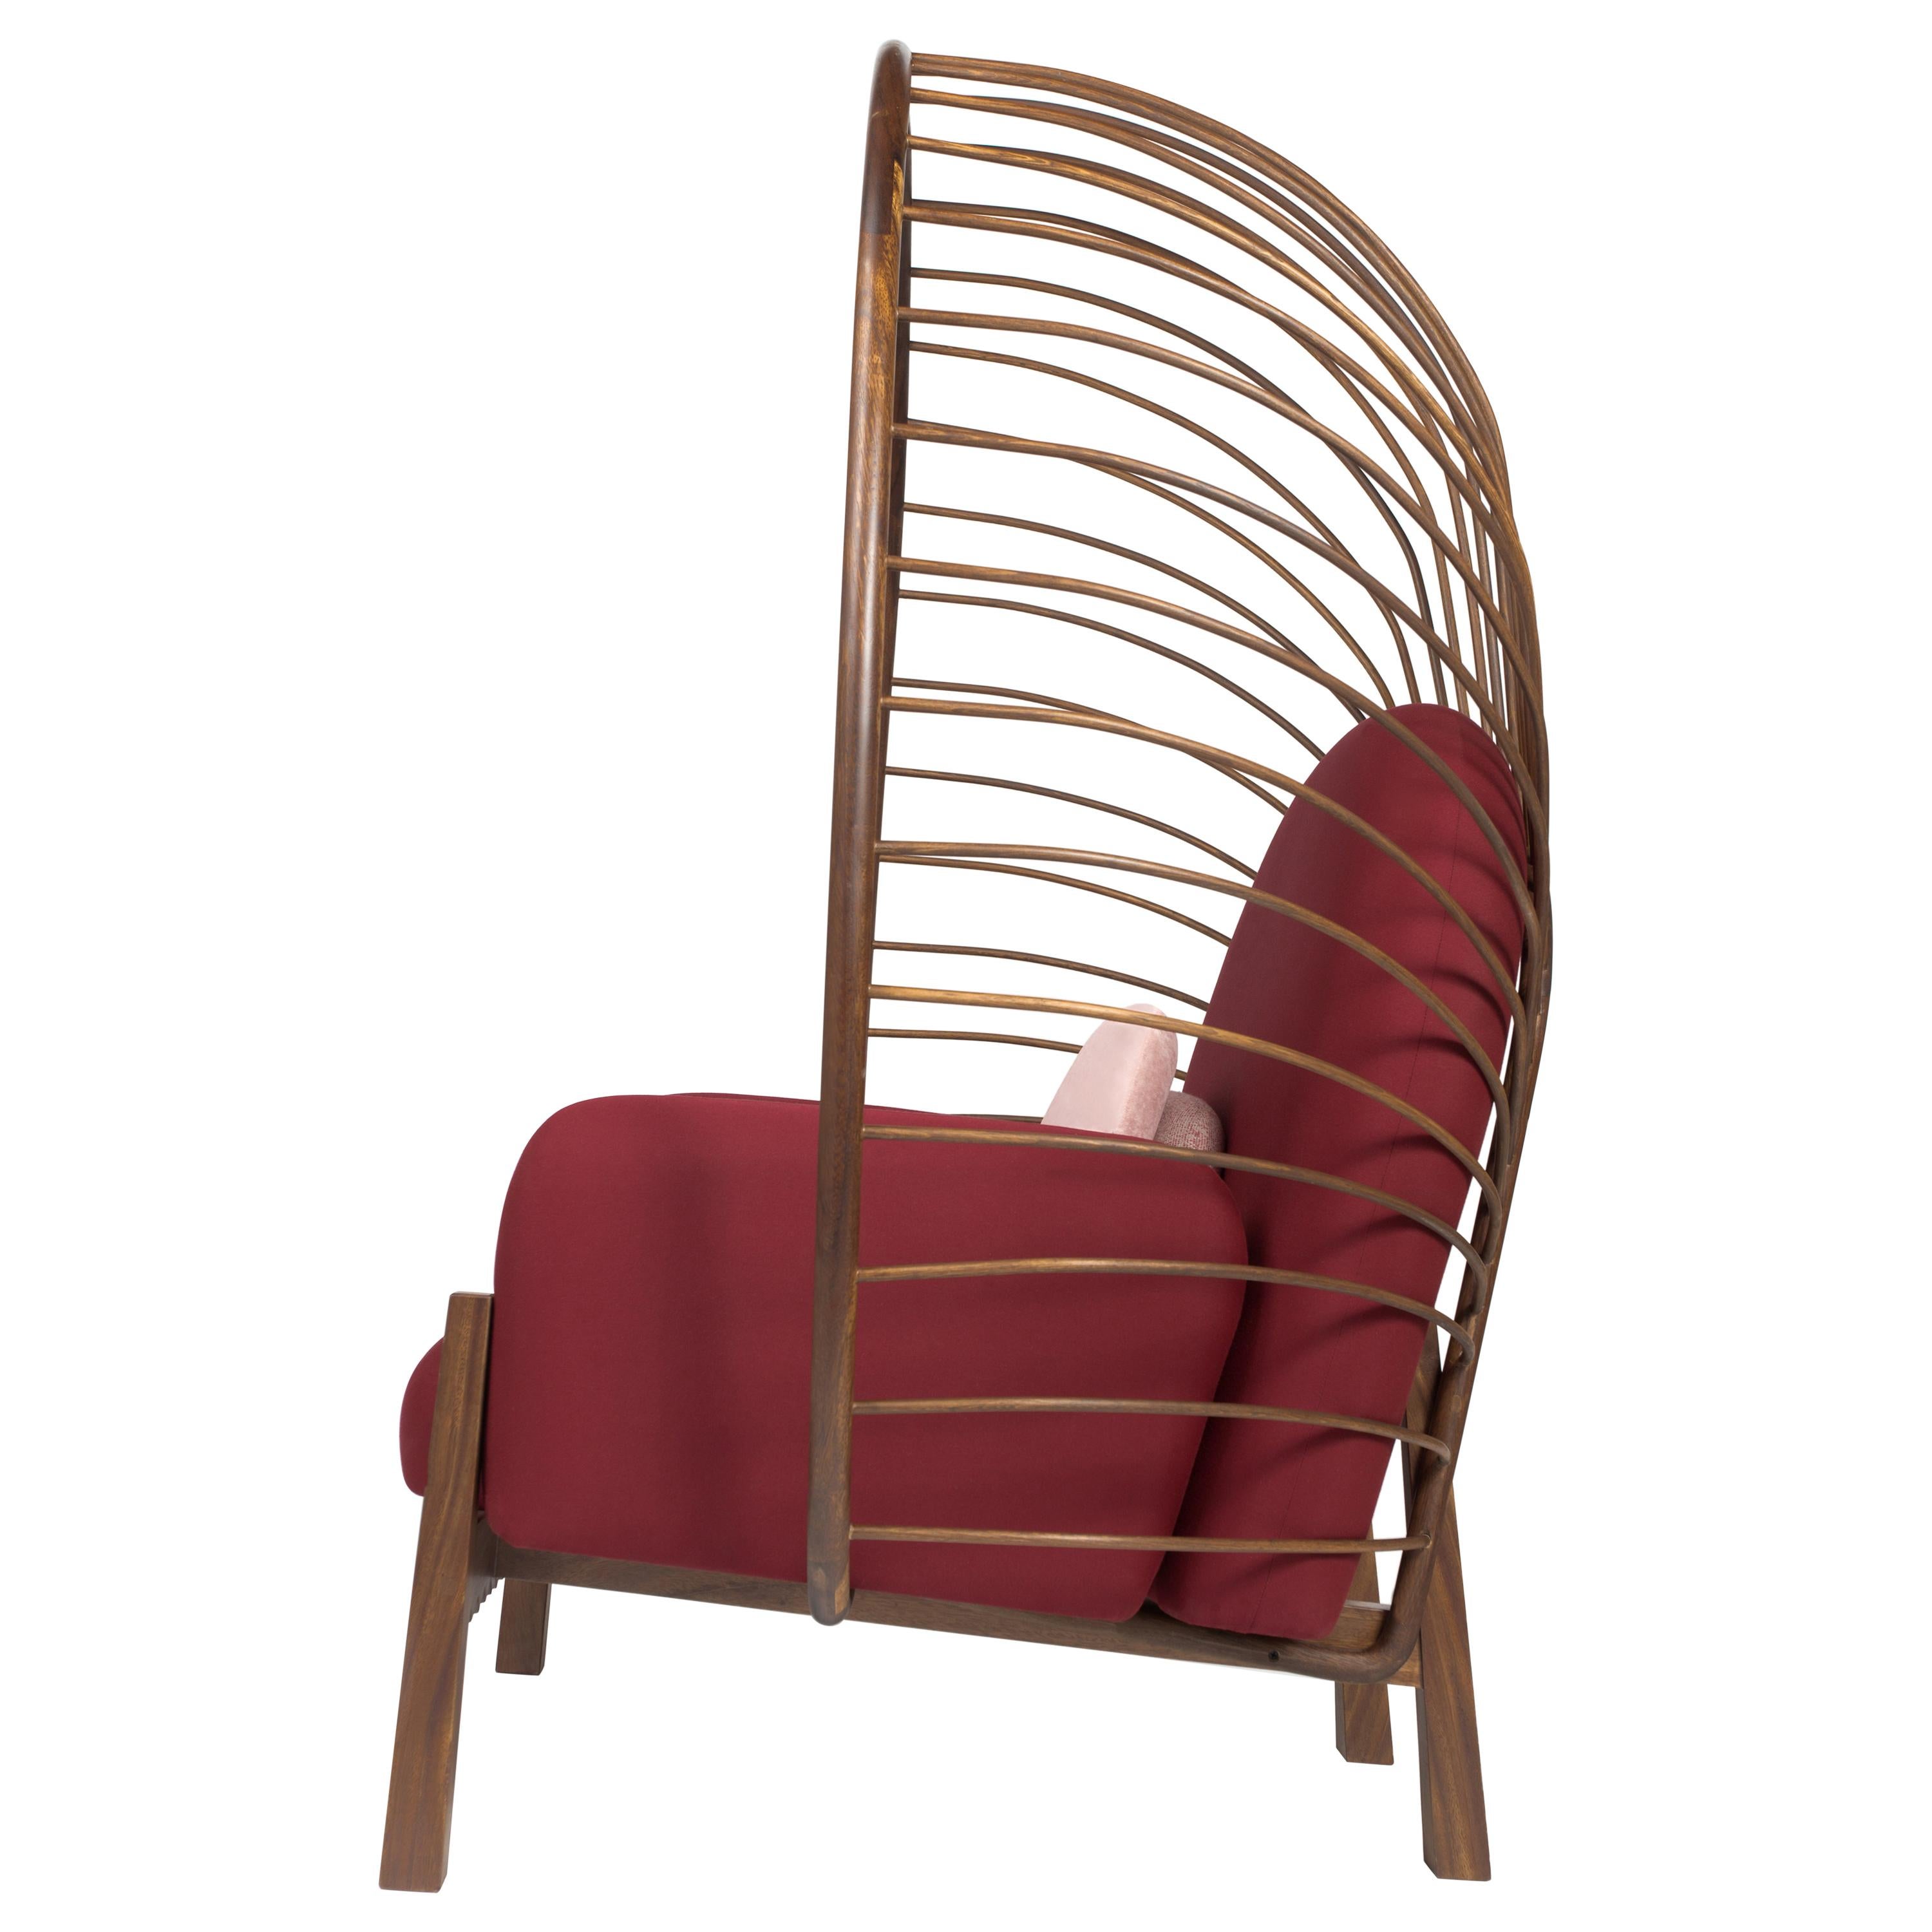 Dieser elegante und auffällige Sessel wurde entworfen, um mit seiner Größe und organischen Form den Außenbereich zu unterstreichen. Perfekt für einen entspannenden Außenbereich.  Man kann sich durch seine Kronenrückseite fast geschützt fühlen.